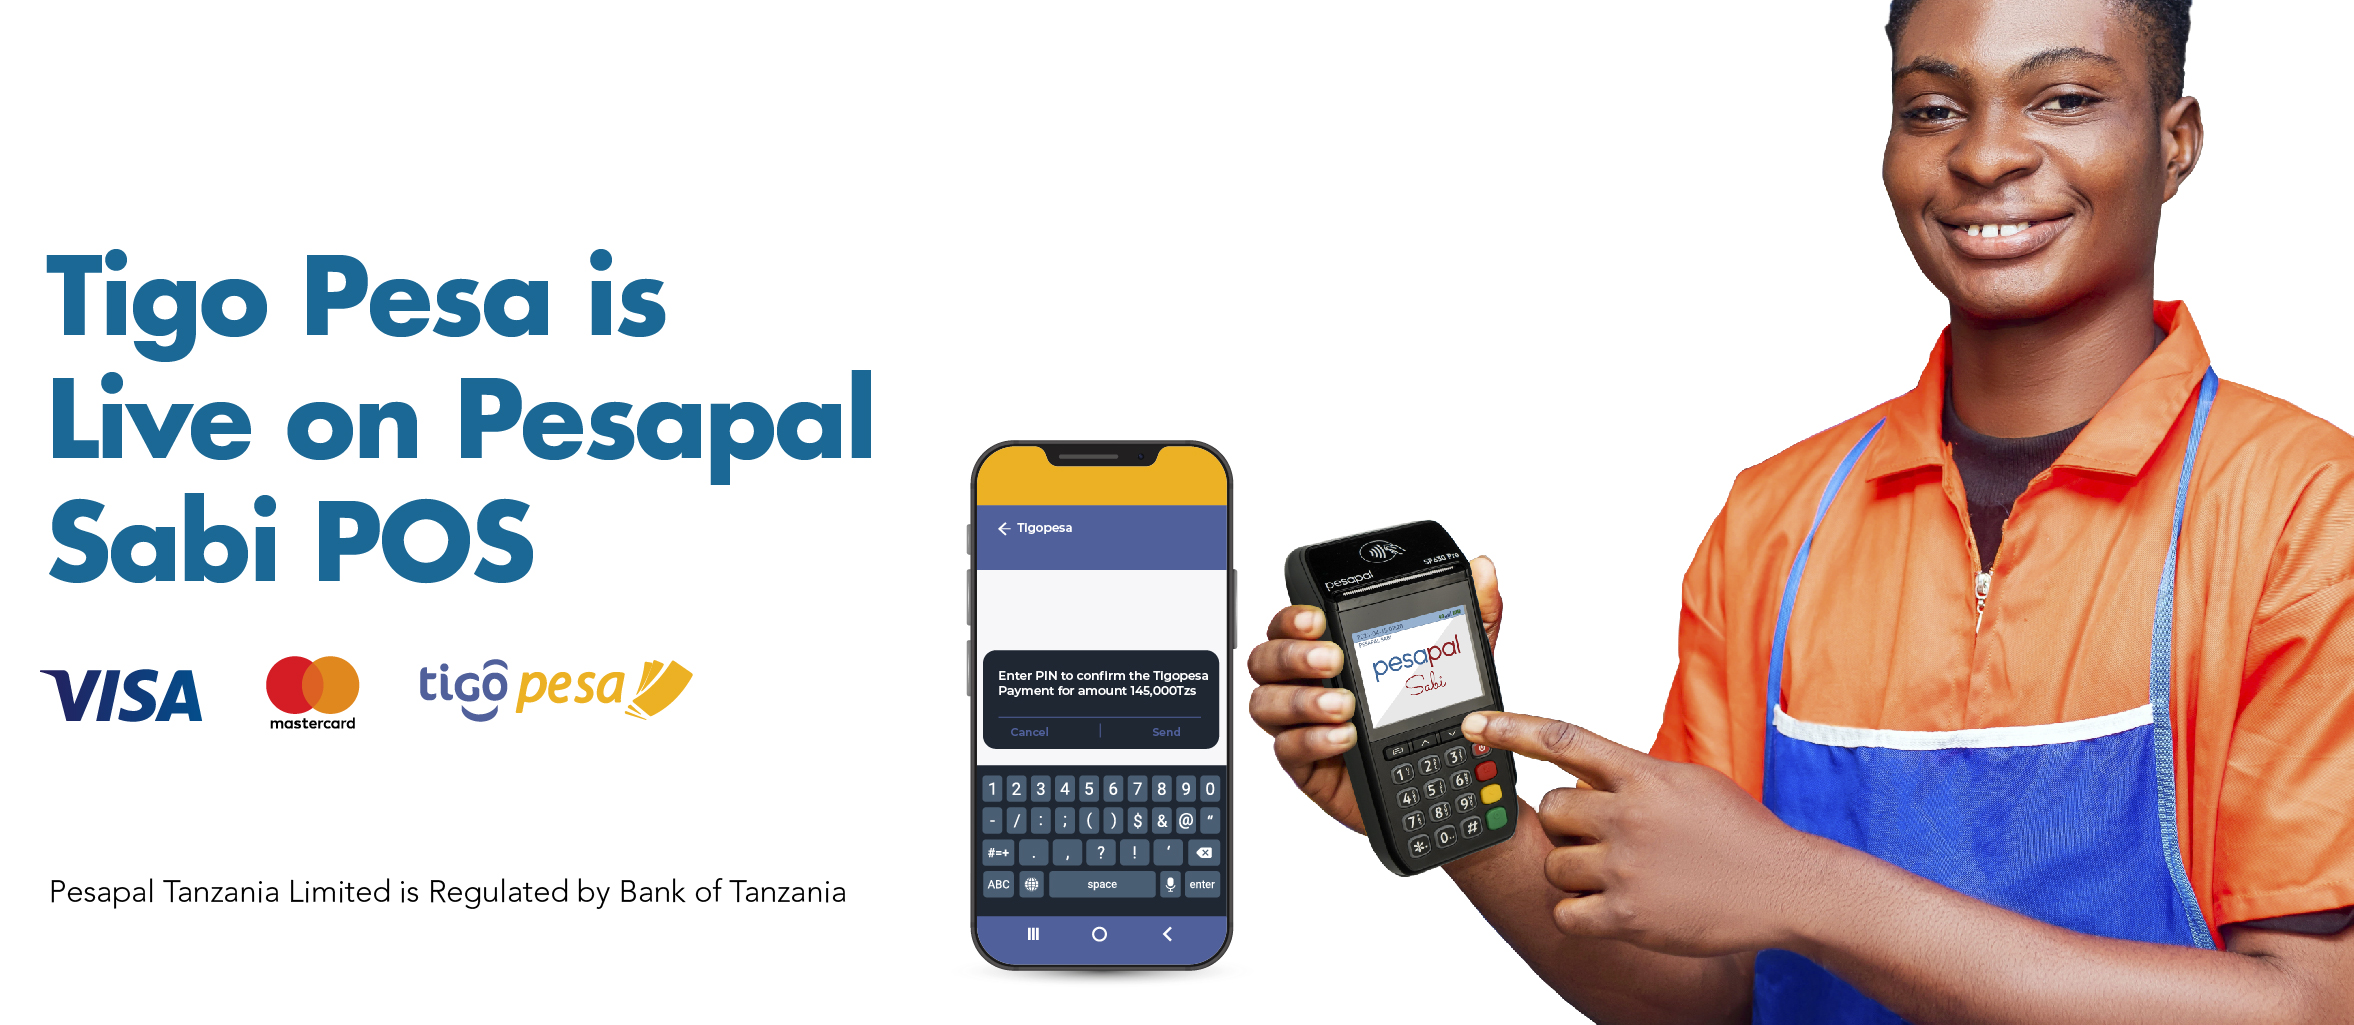 Pesapal Tanzania, Tigo Partners to Accelerate Access to Financial Services